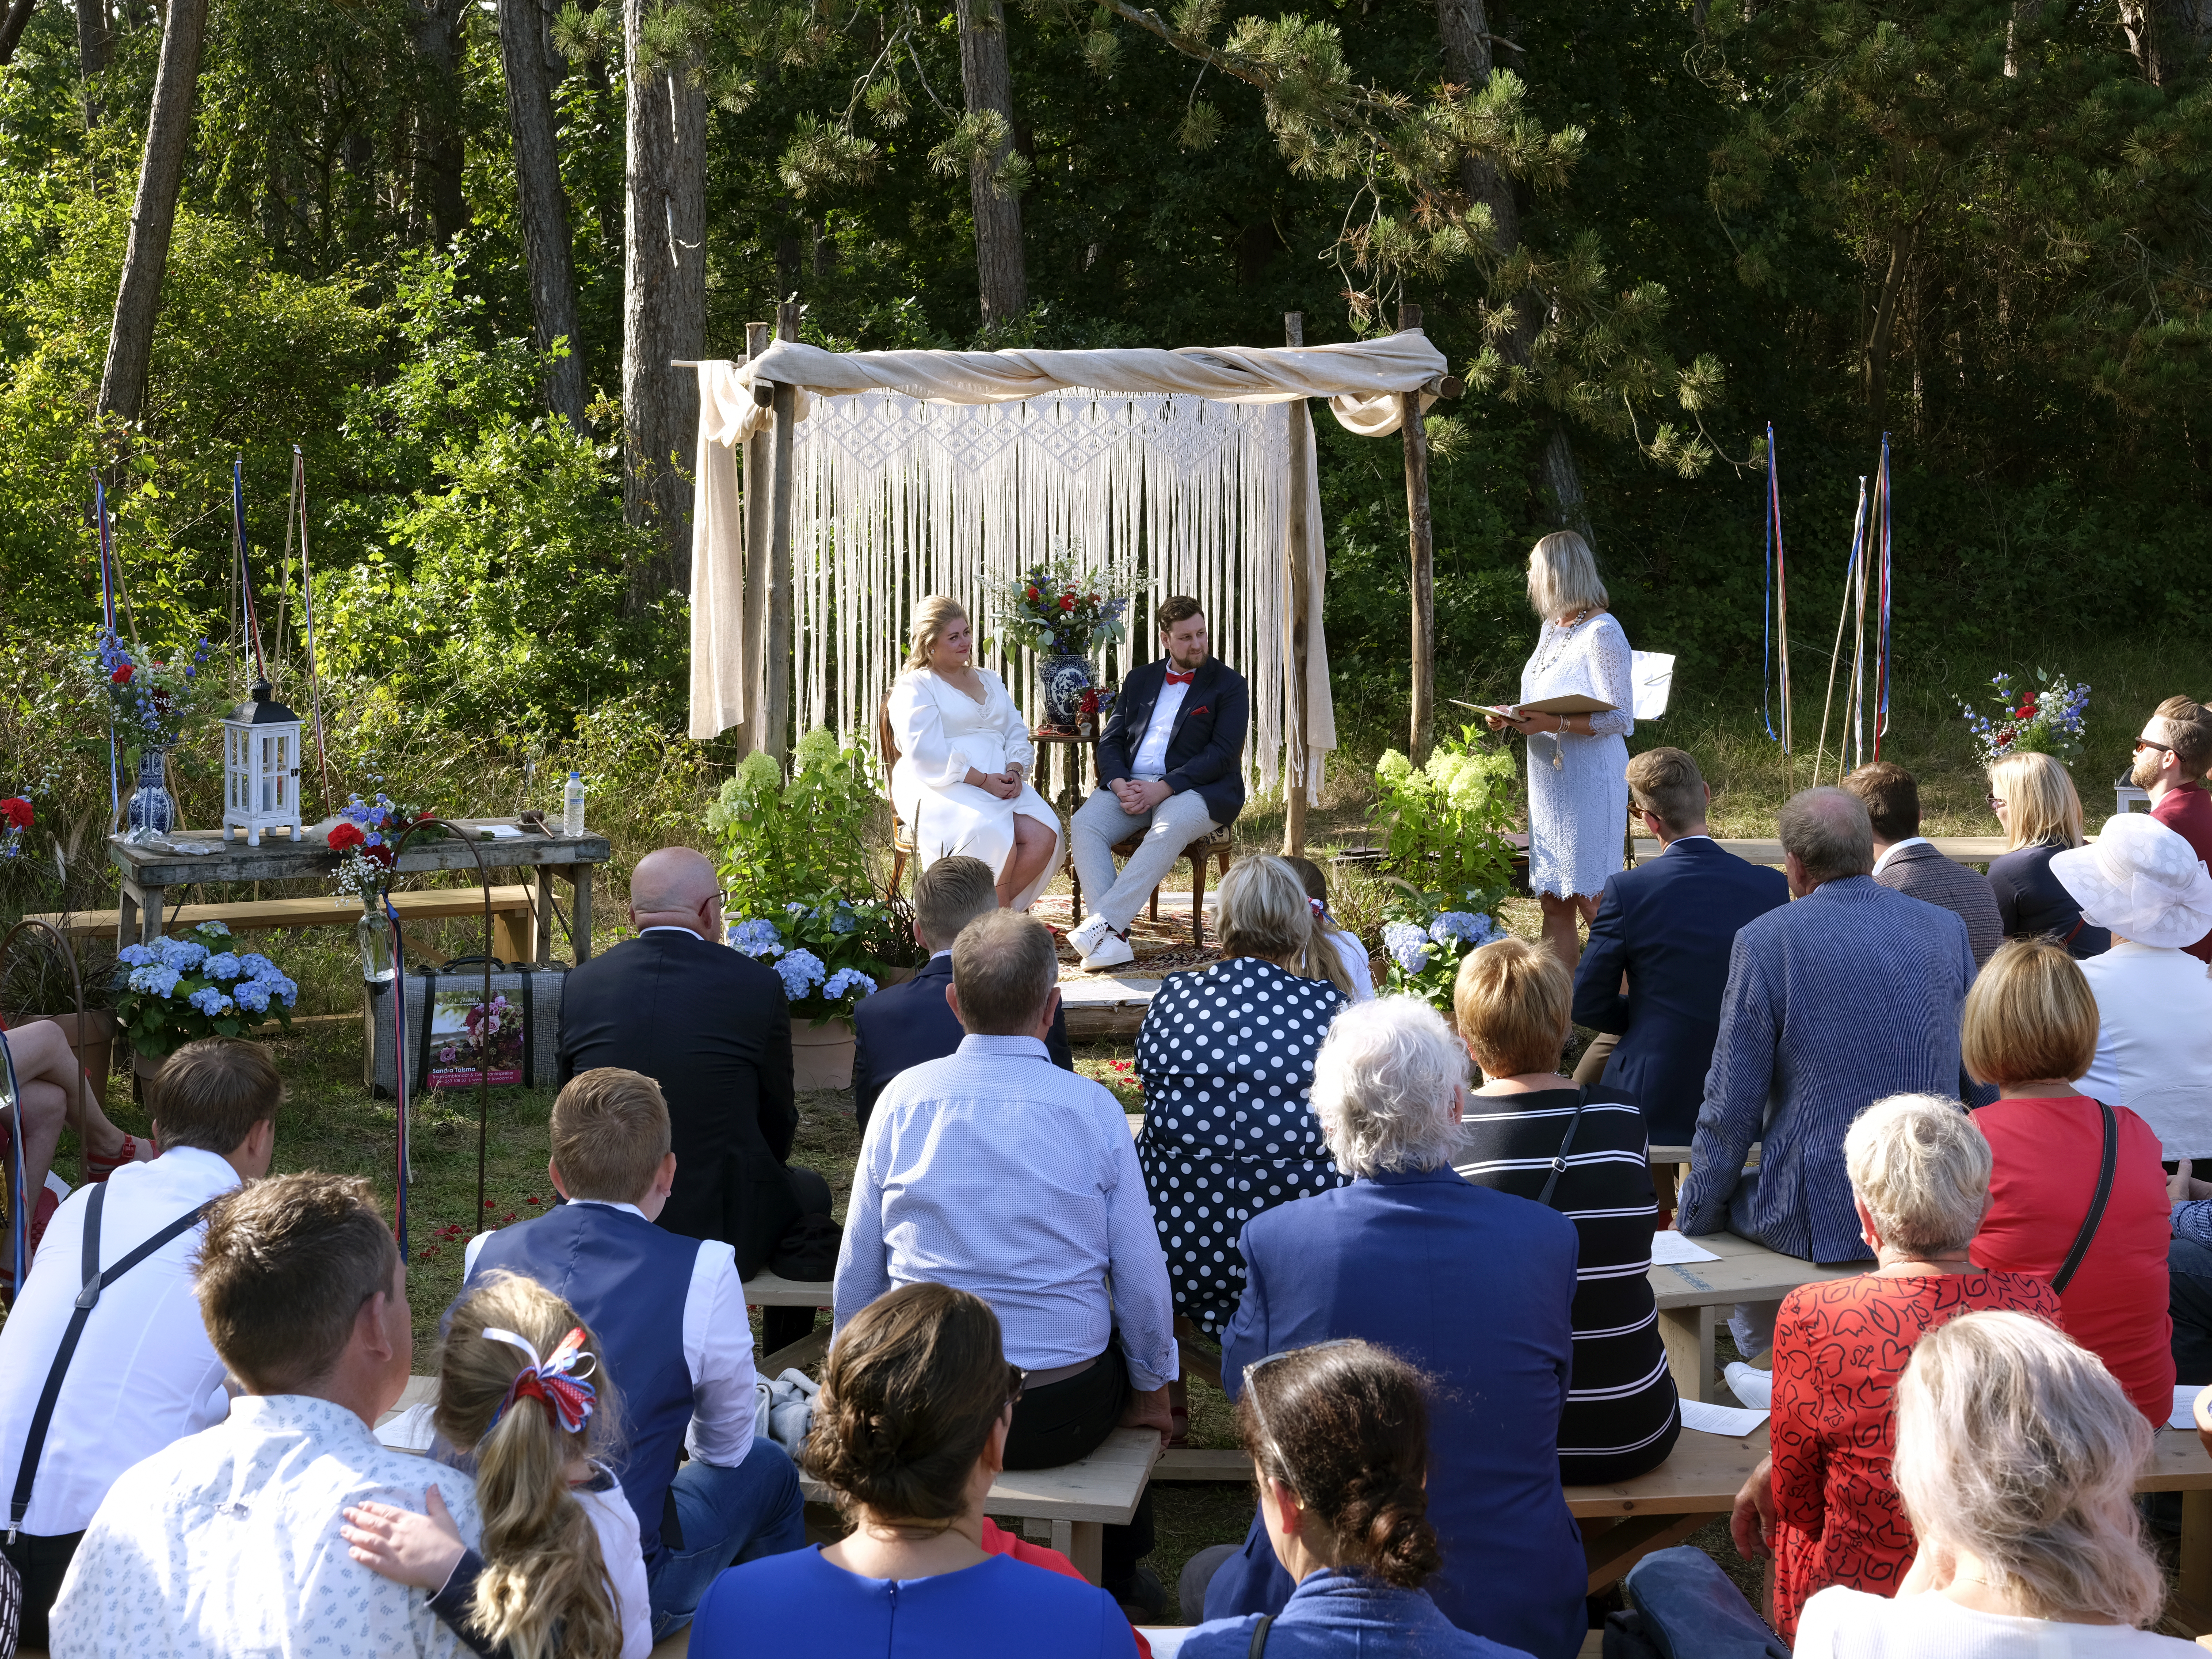 ceremonie, bos, gasten, bruidspaar, huwelijk